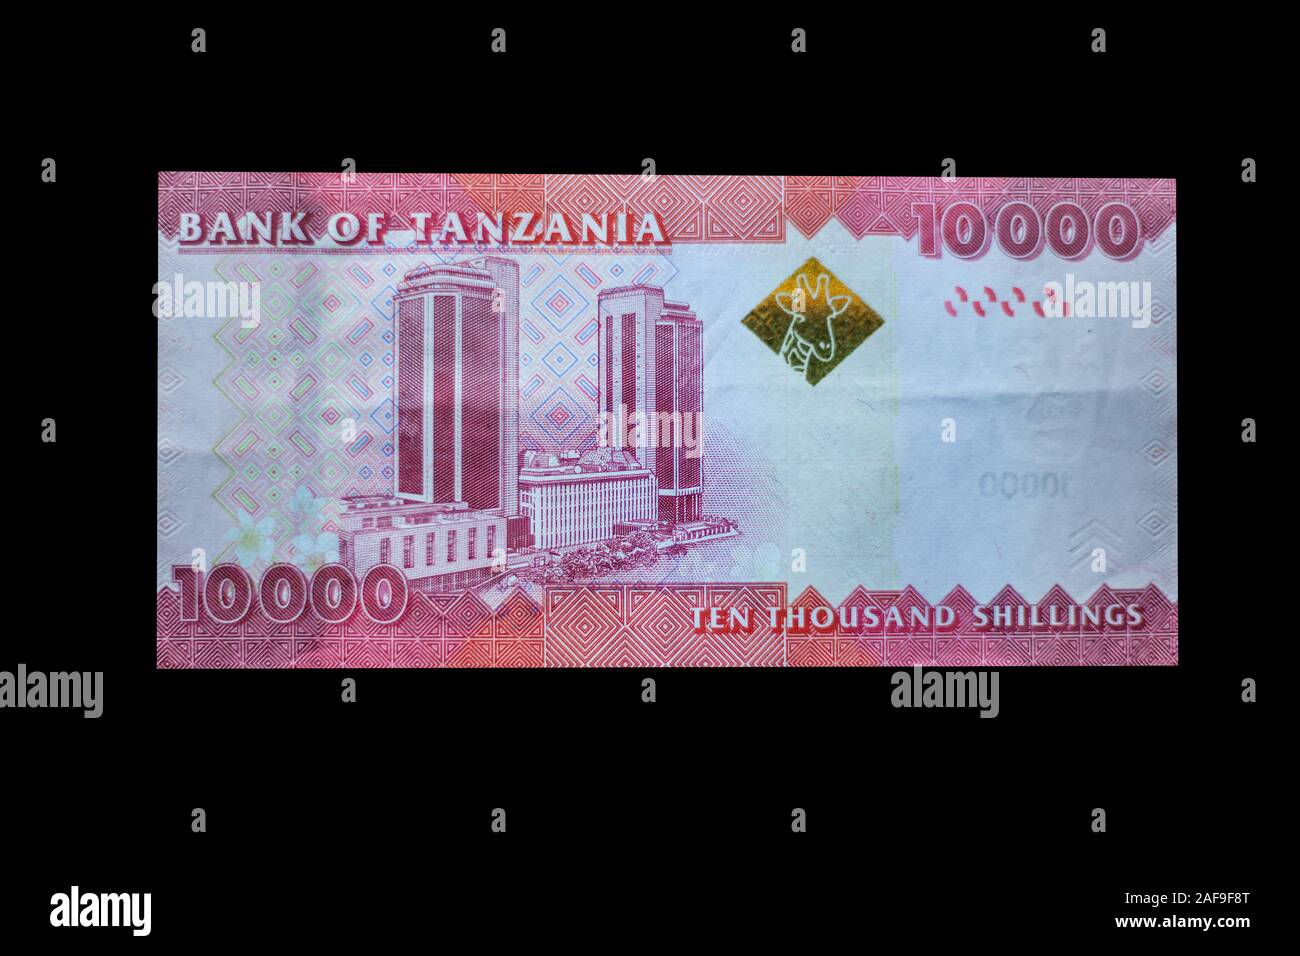 La Tanzanie. Dix mille billets Shilling, 2011 Série. Banque nationale de Tanzanie au verso. Banque D'Images